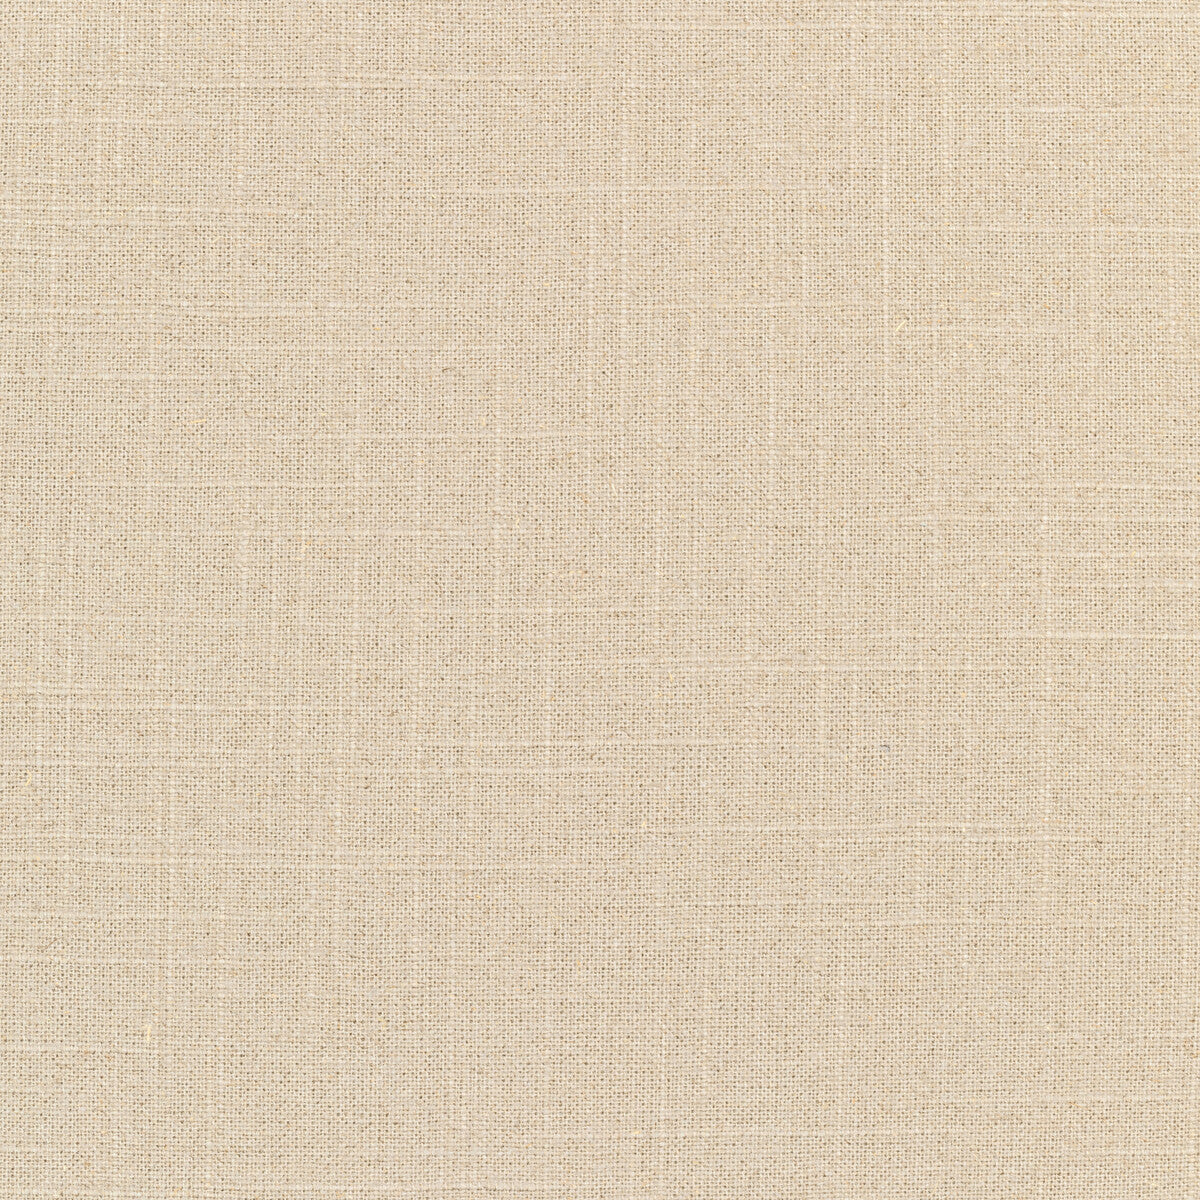 Kravet Basics fabric in 30808-116 color - pattern 30808.116.0 - by Kravet Basics